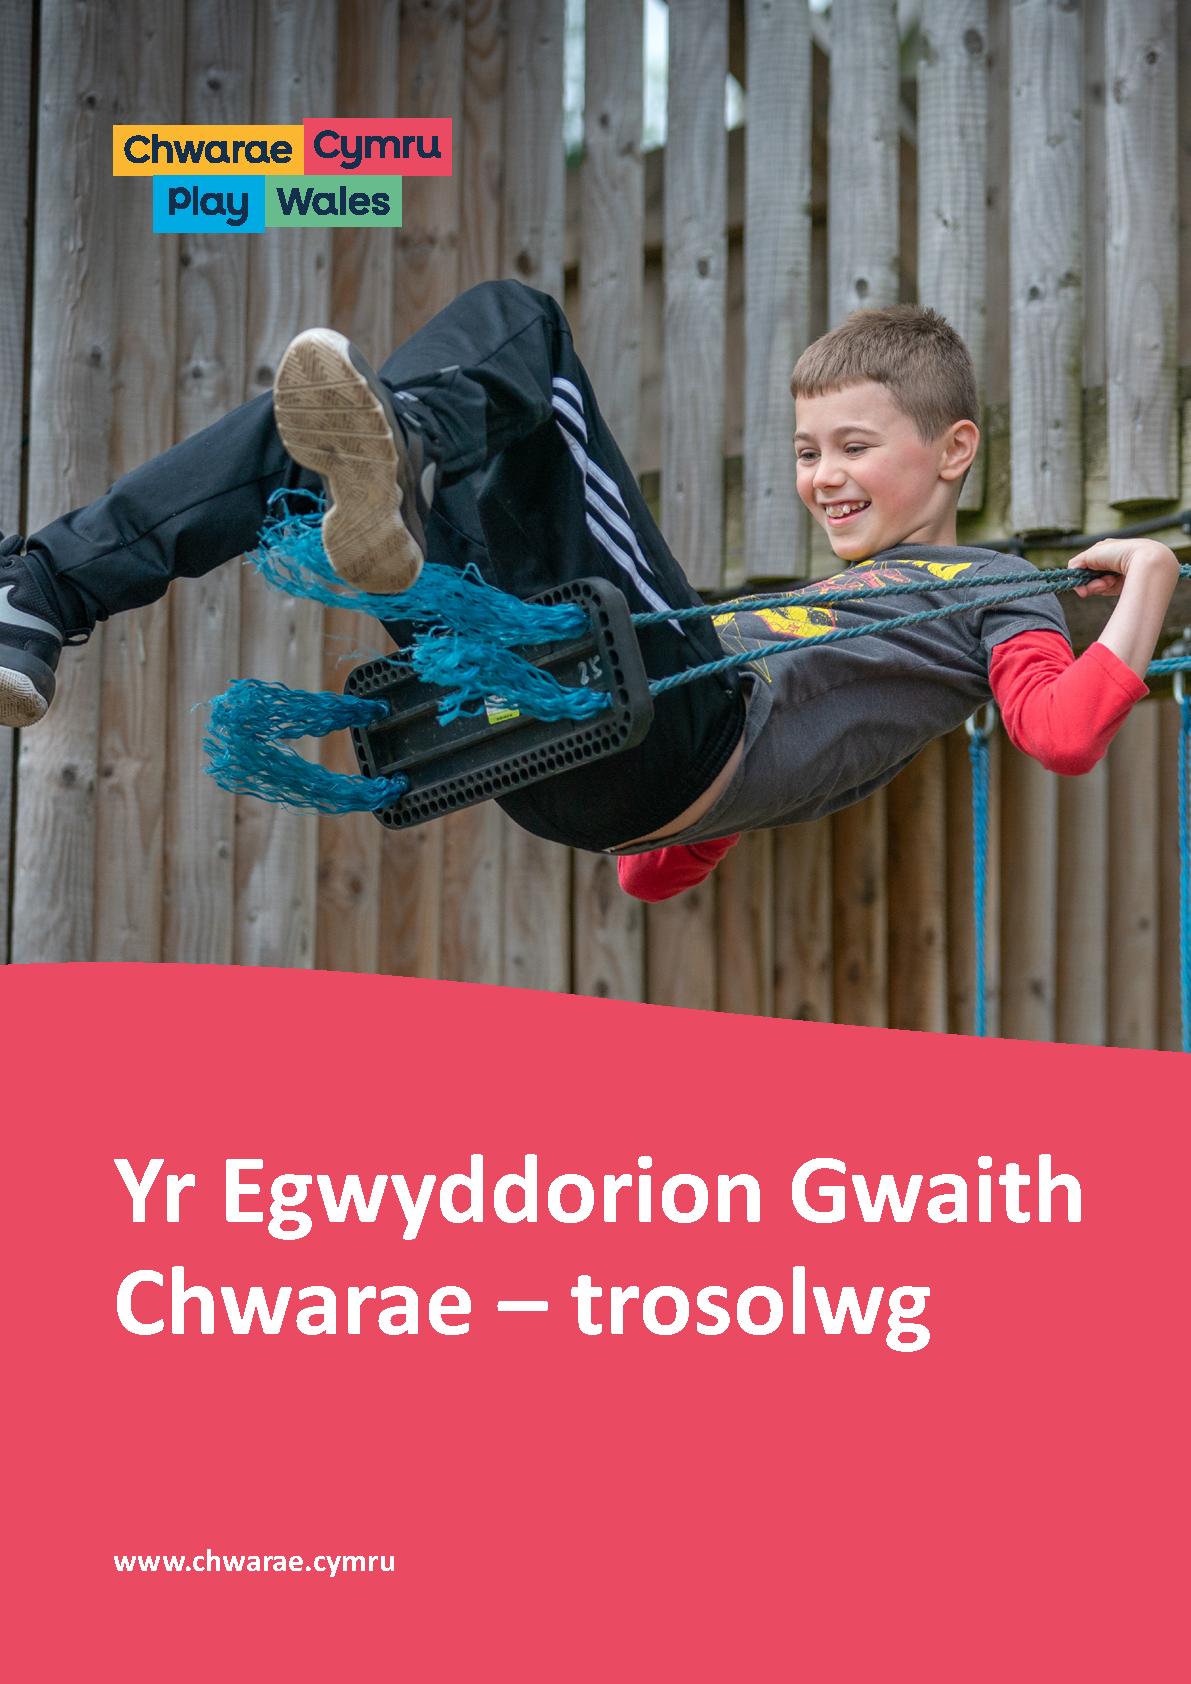 Yr Egwyddorion Gwaith Chwarae – trosolwg